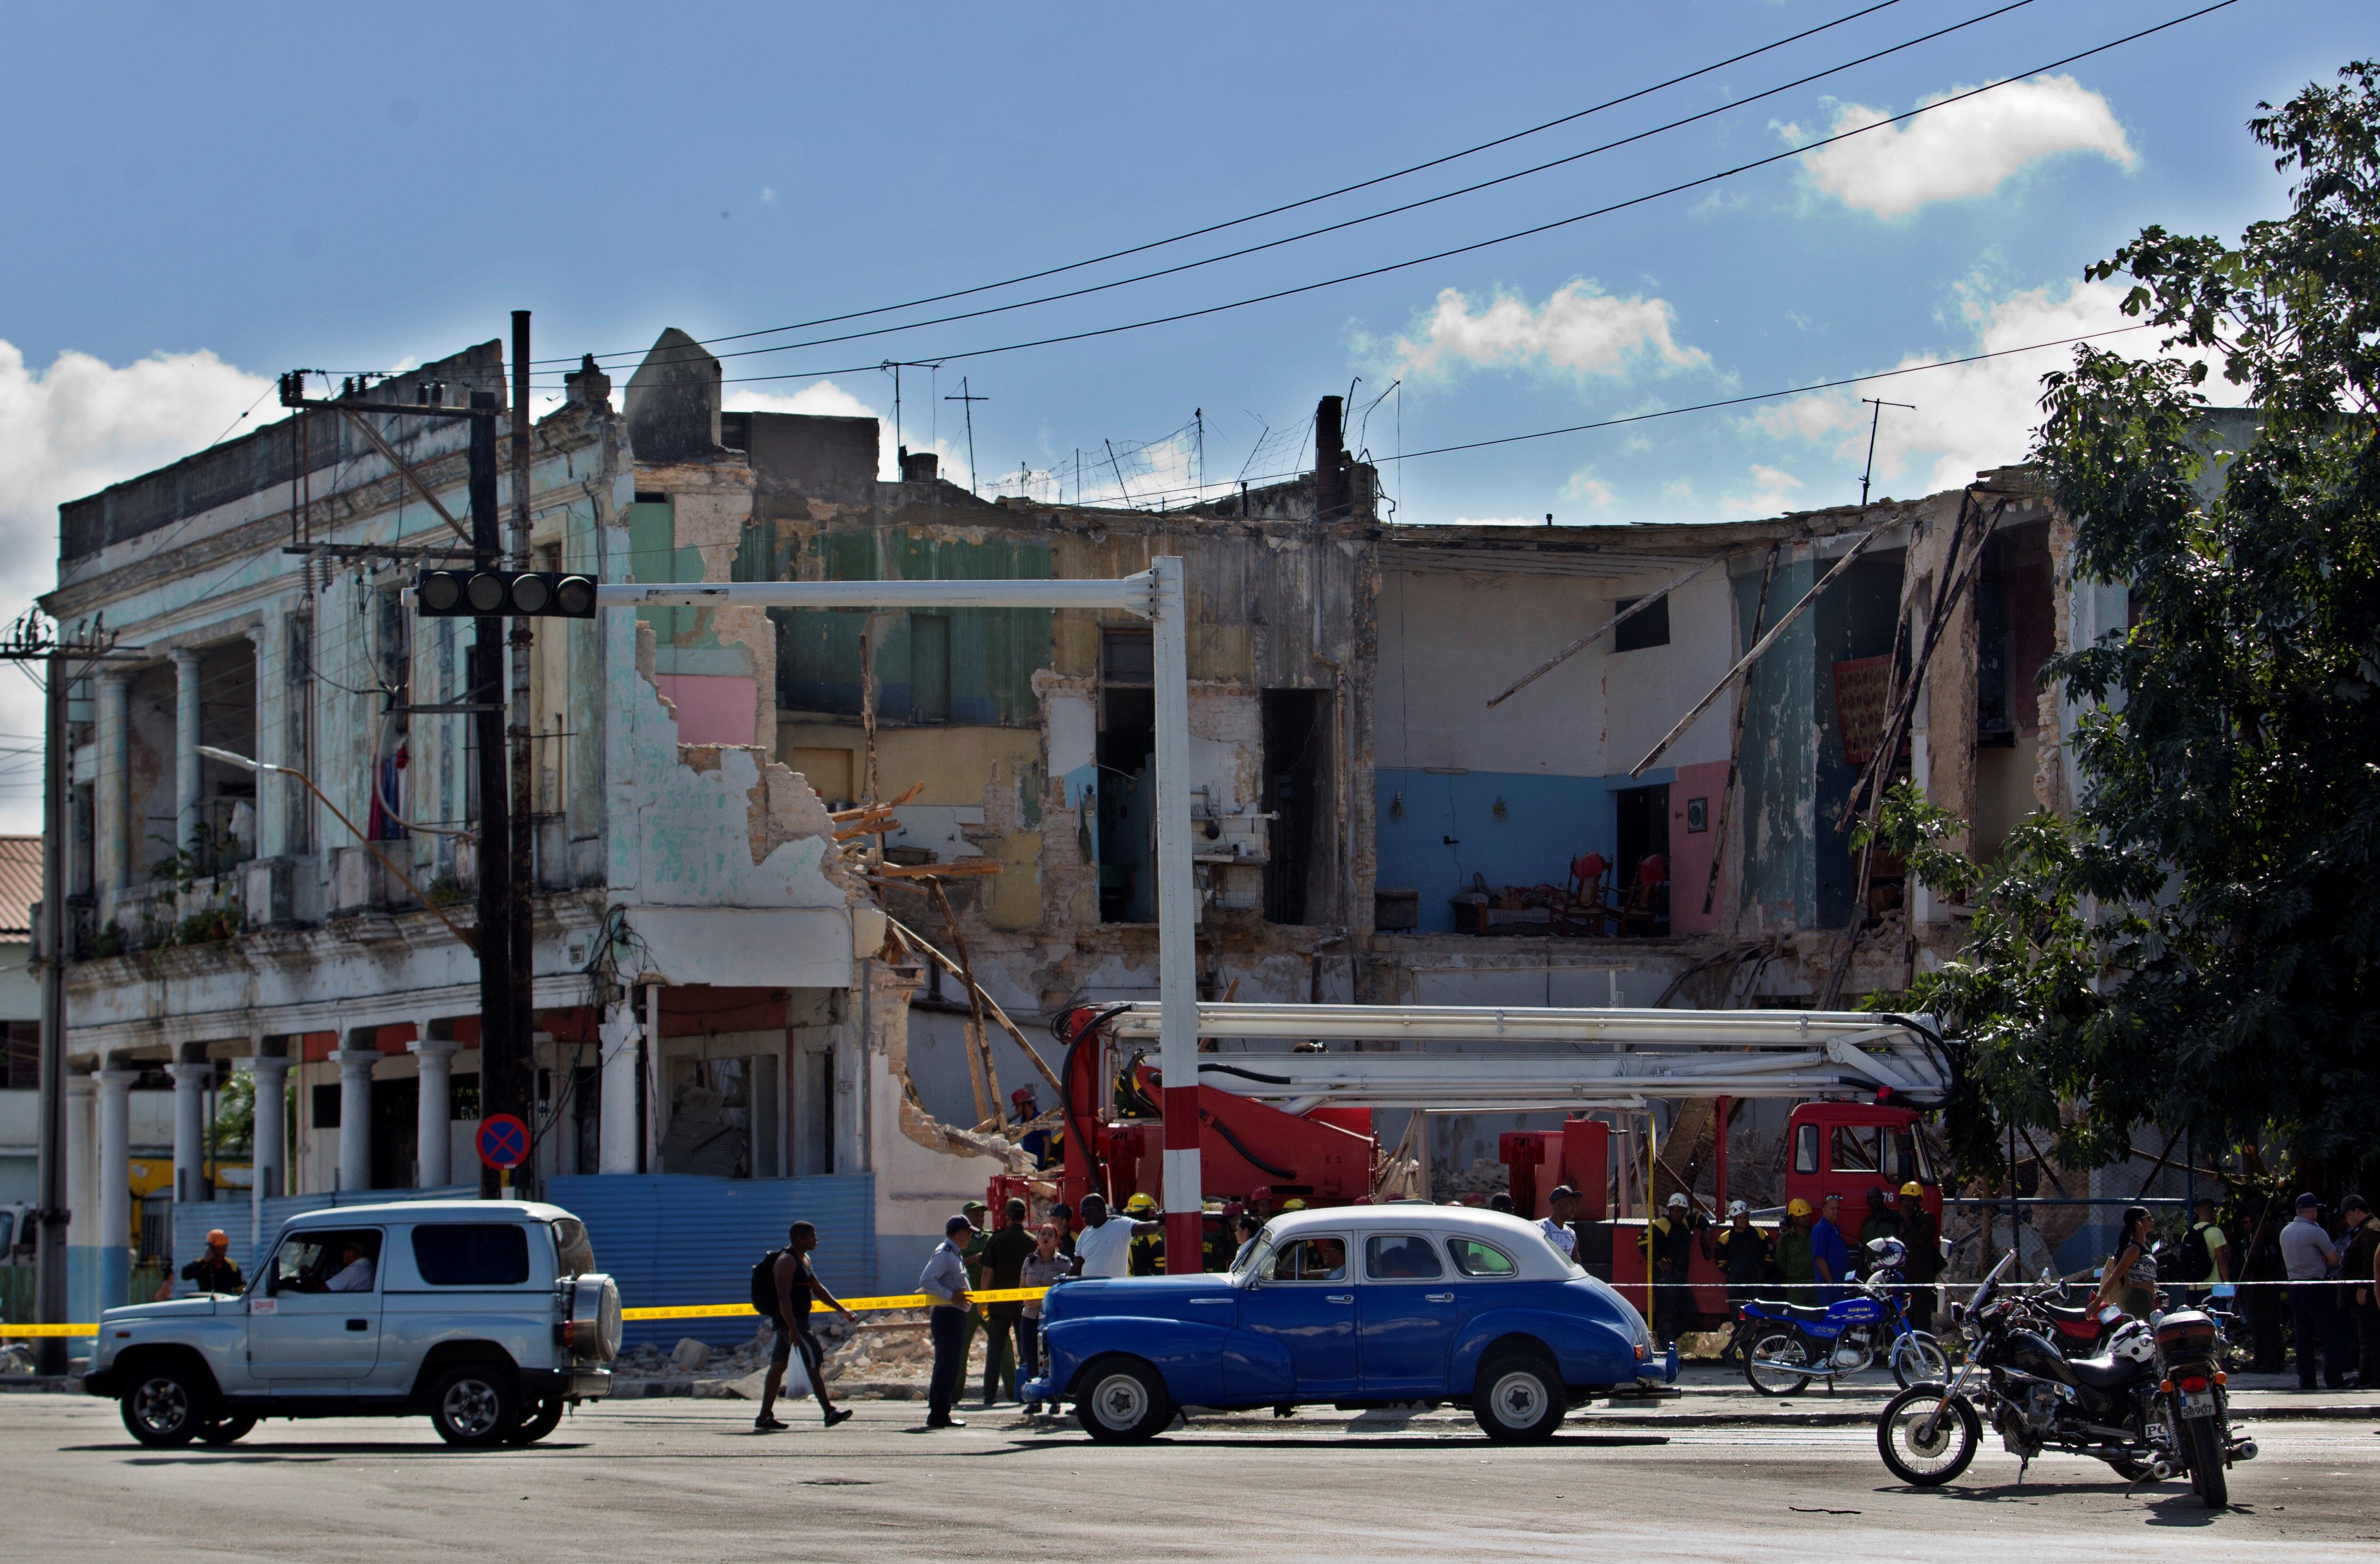 Al menos un fallecido por el derrumbe parcial de un edificio en La Habana Vista general de un edificio que se derrumbó y causó la muerte de un hombre este jueves, en la esquina de Calzada del Cerro y Avenida Boyeros en La Habana (Cuba), según fuentes oficiales. EFE